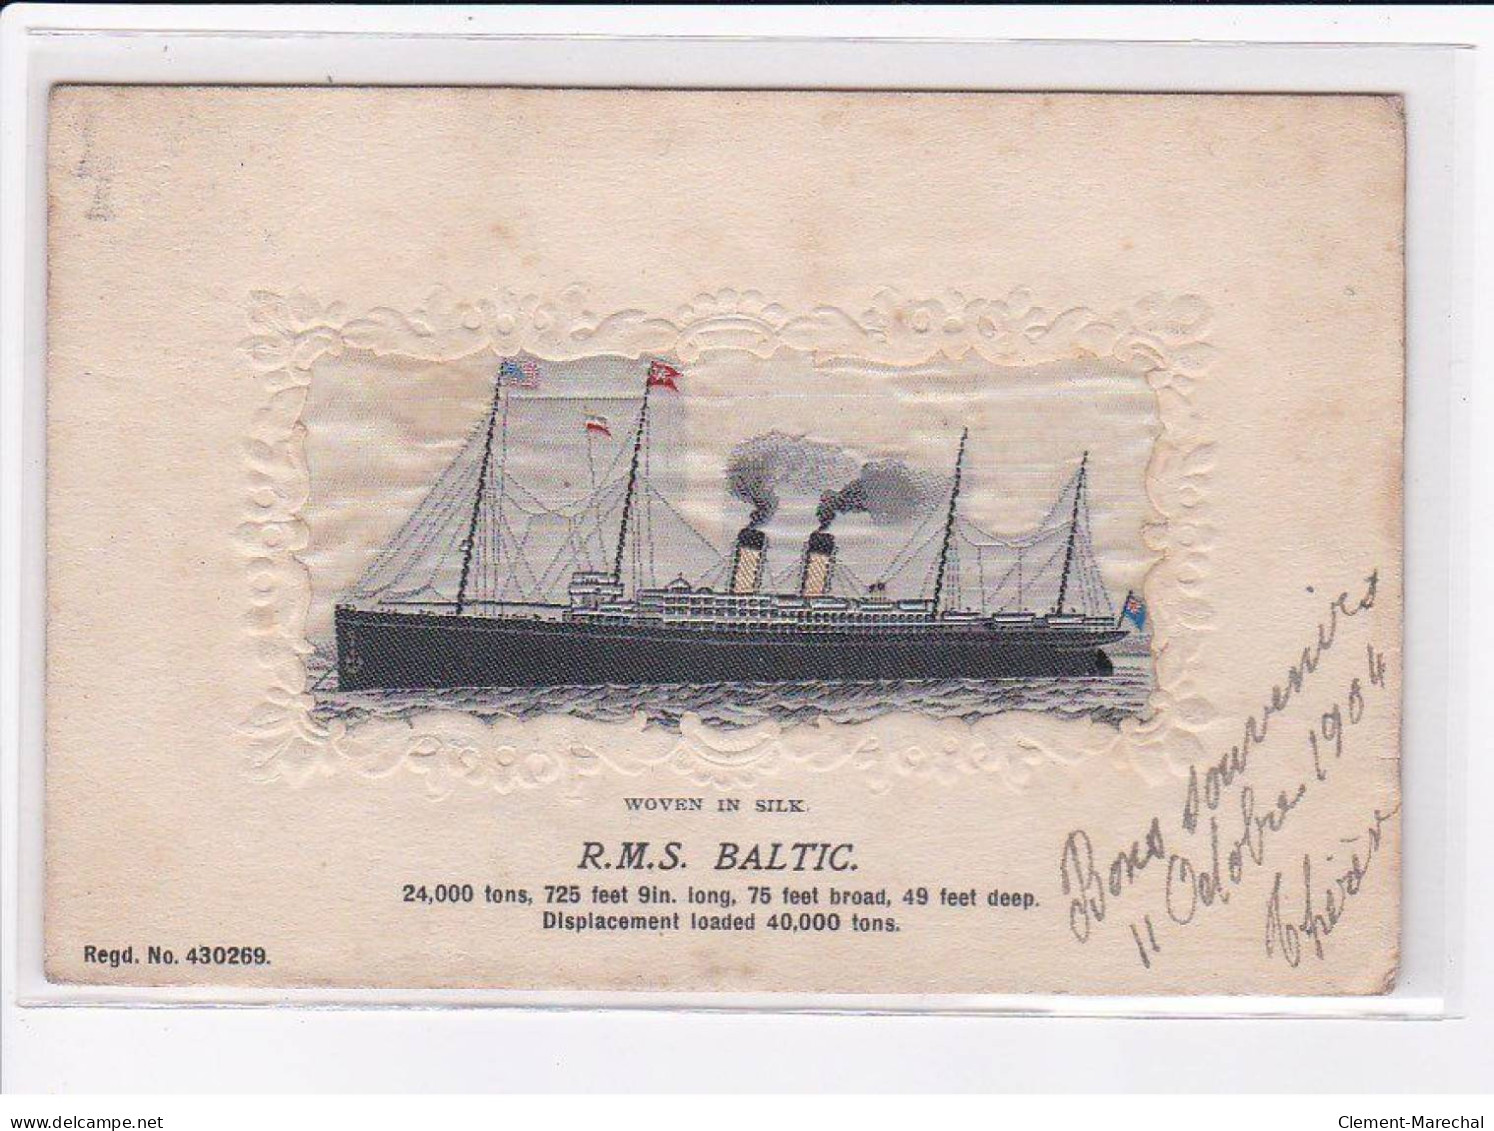 BATEAUX : Carte Sur Soie Du Paquebot RMS BALTIC (embored - Brodée)- Très Bon état - Paquebote